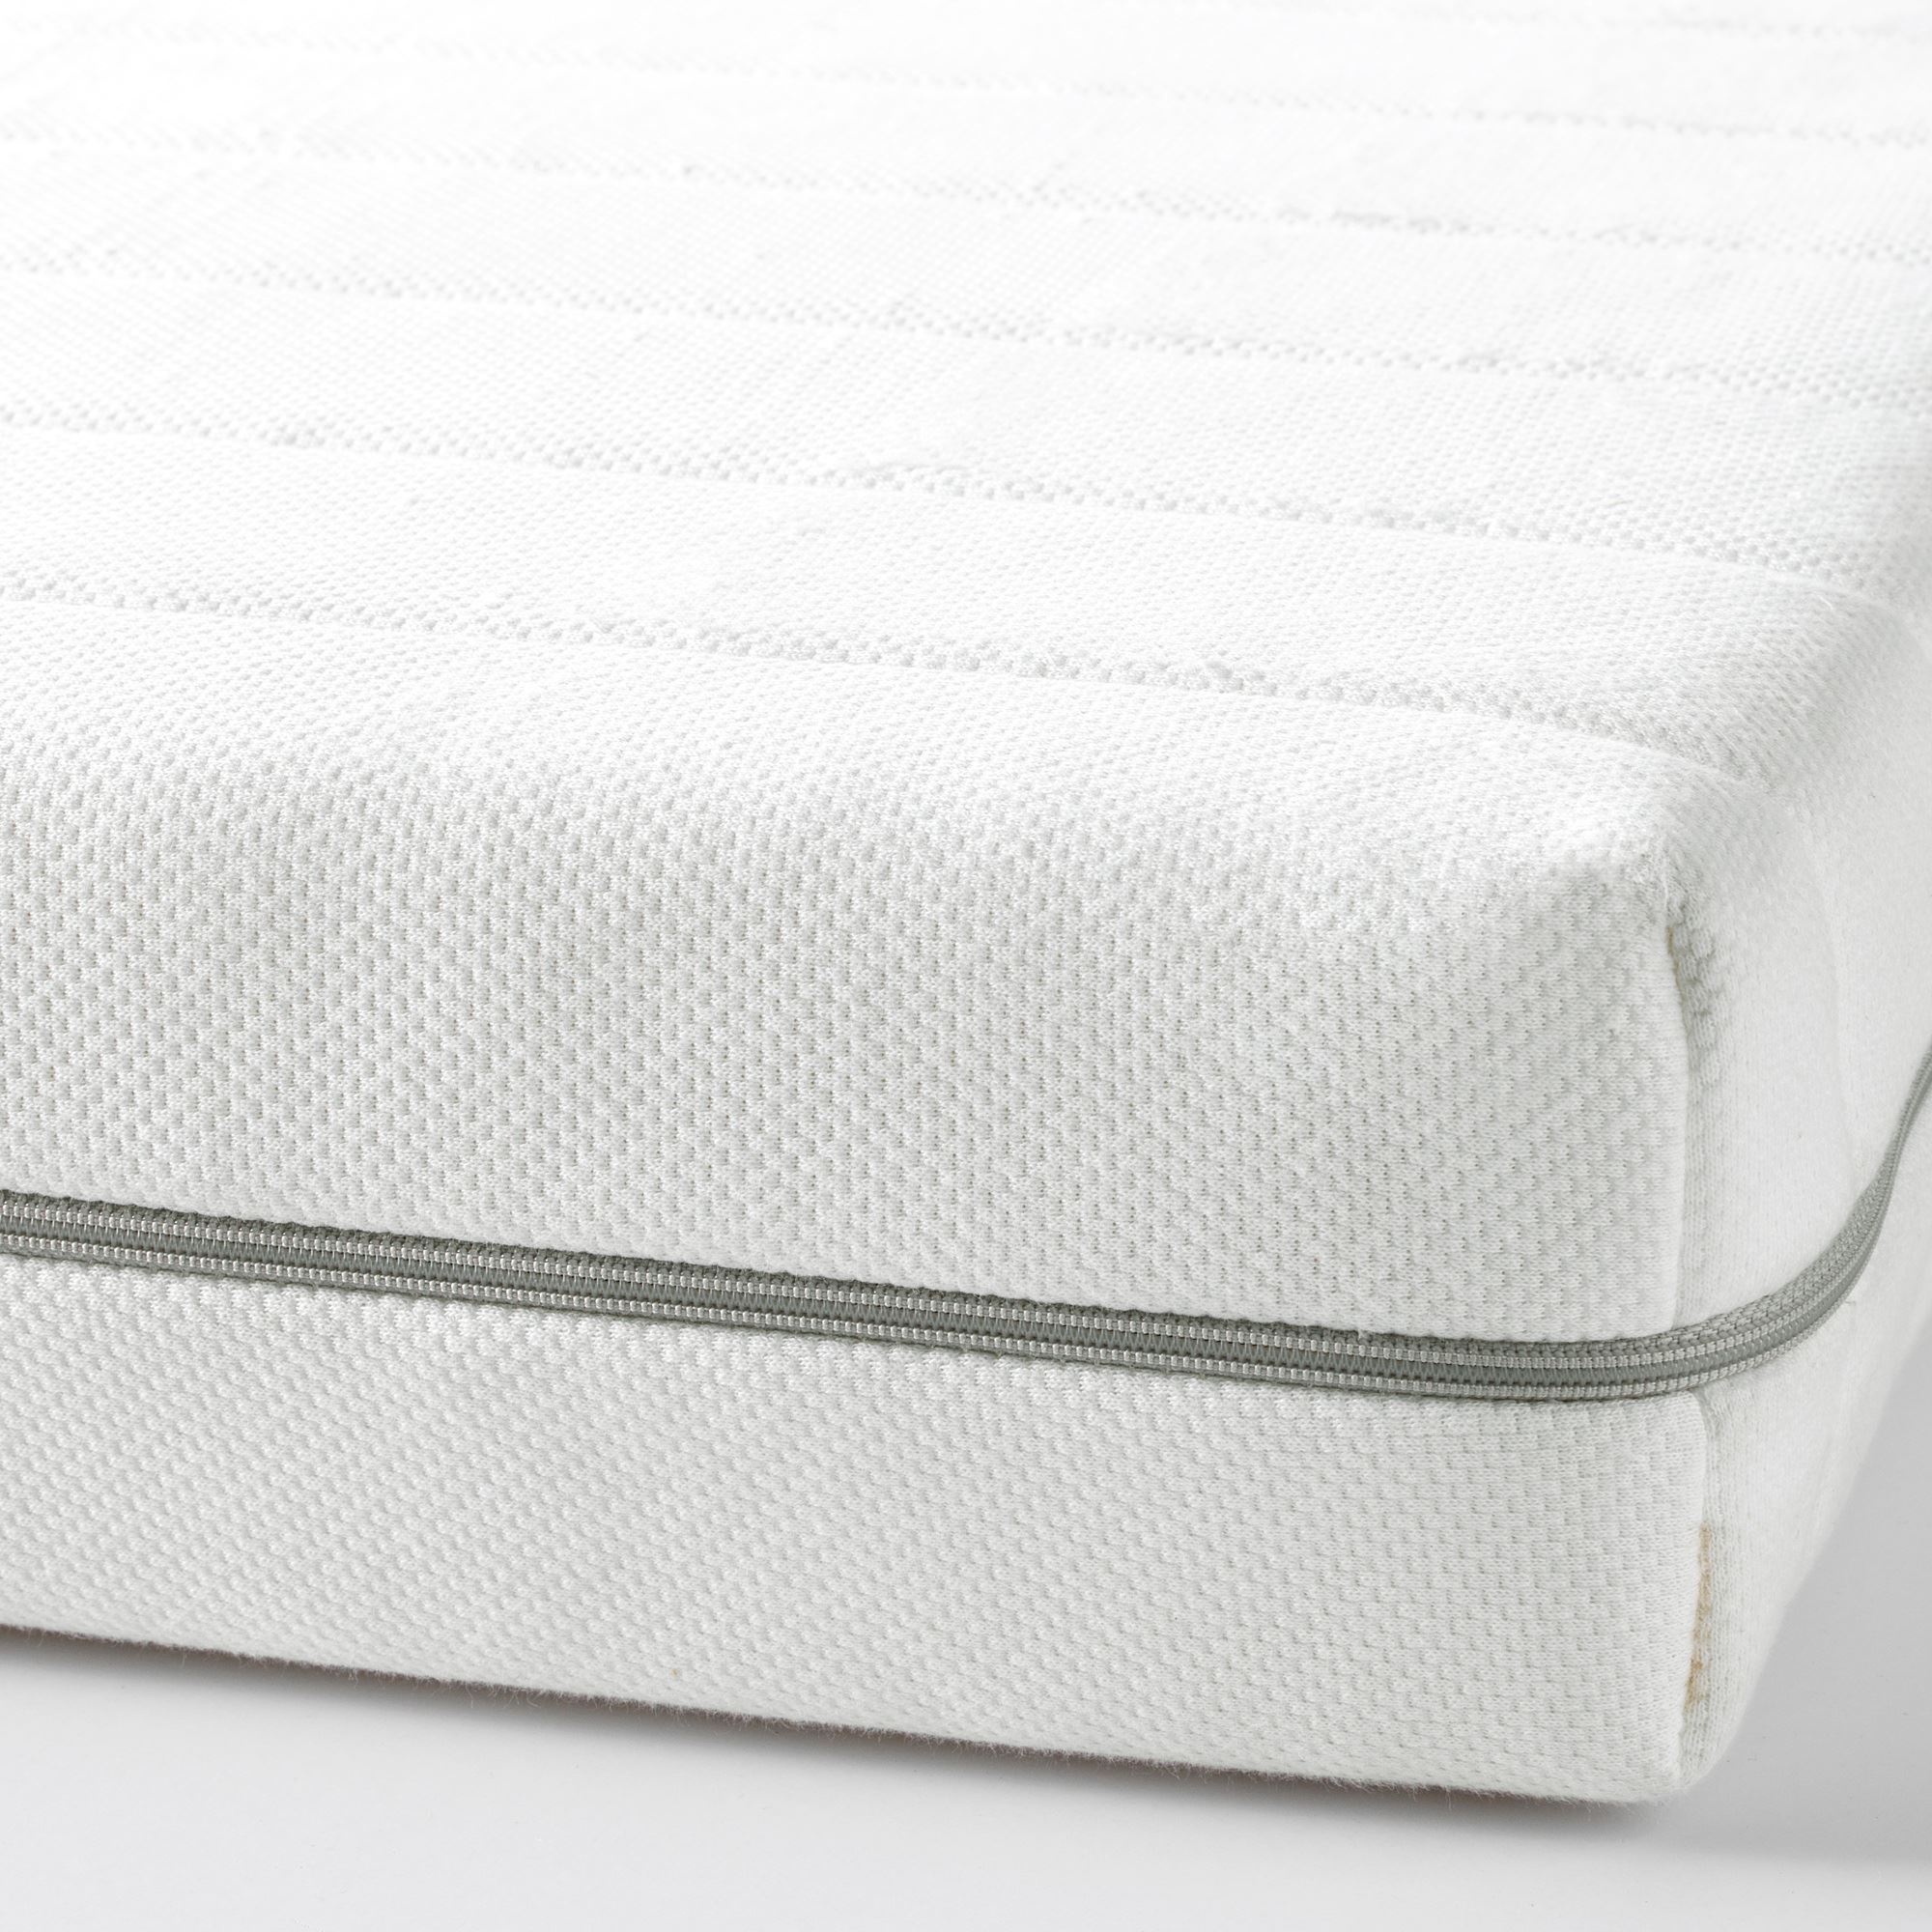 MALFORS tek kişilik yatak, beyazsert, 80x200 cm